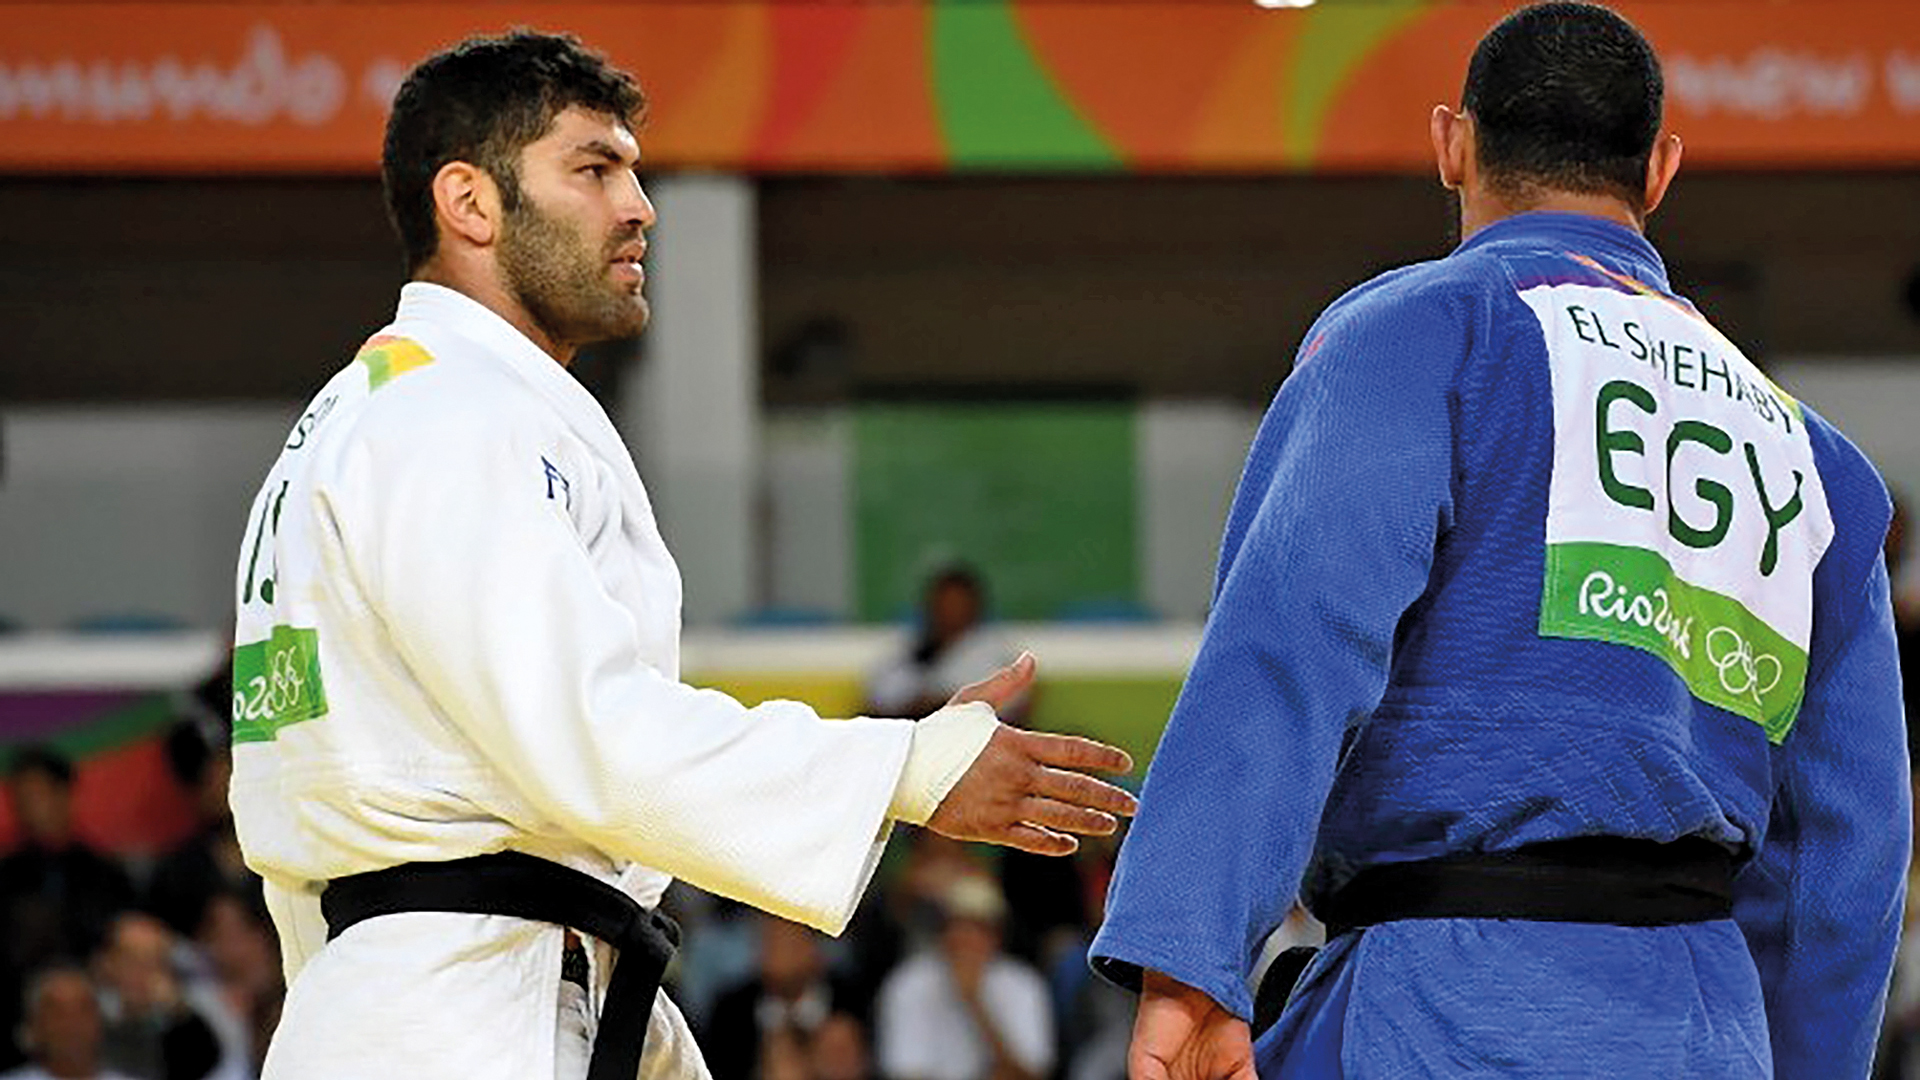 Der Ägypter Islam El-Shehaby verweigert dem Israeli Or Sasson bei den Olympischen Spielen 2016 den Handschlag